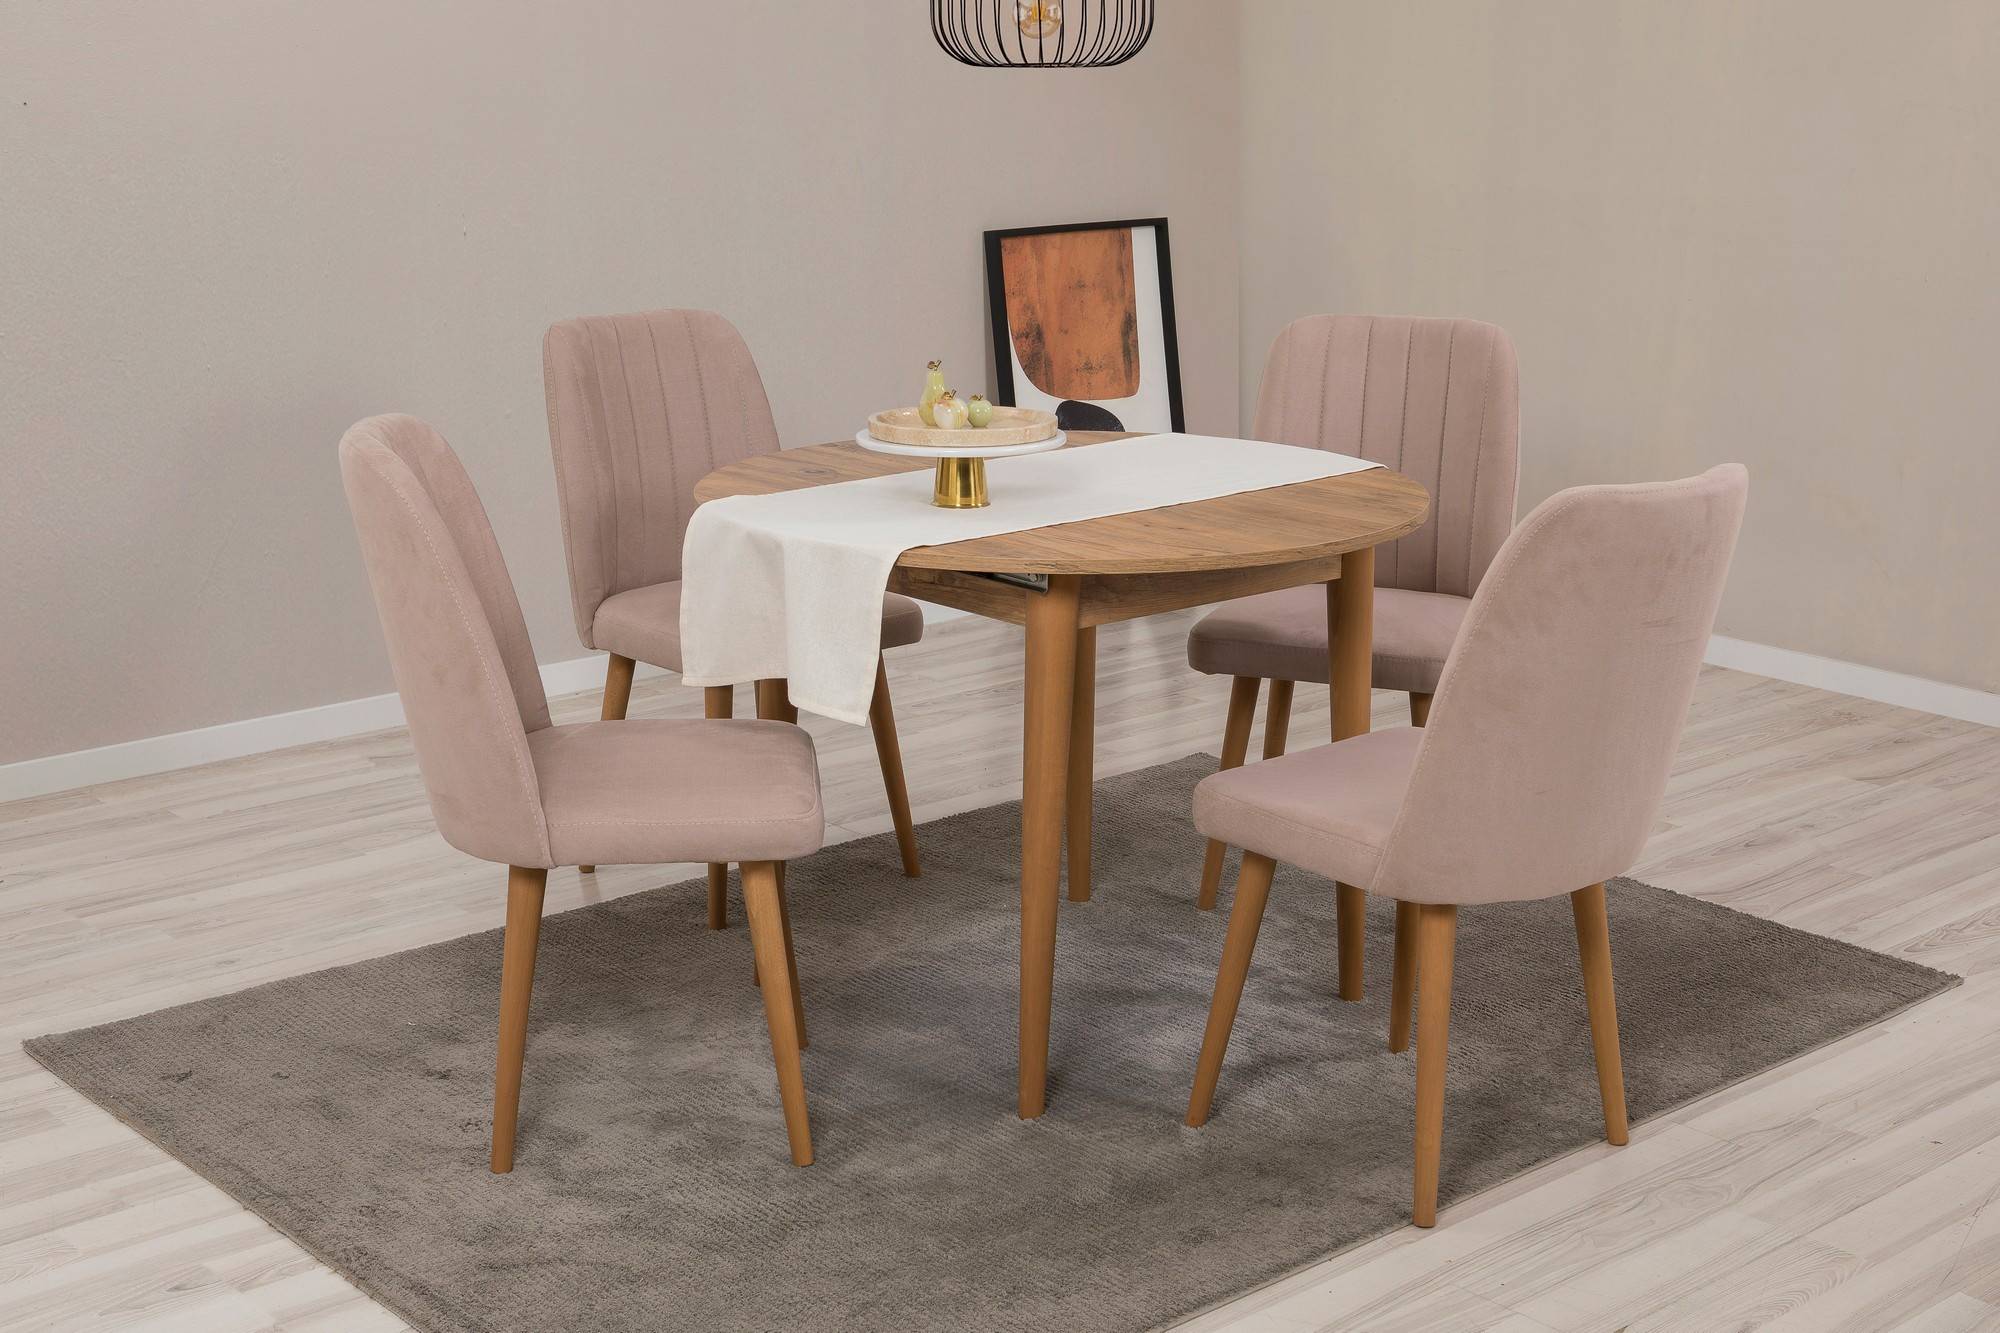 Erweitertes rundes Tischset und 4 Malva Stühle aus hellem Holz und taupefarbenem Stoff.